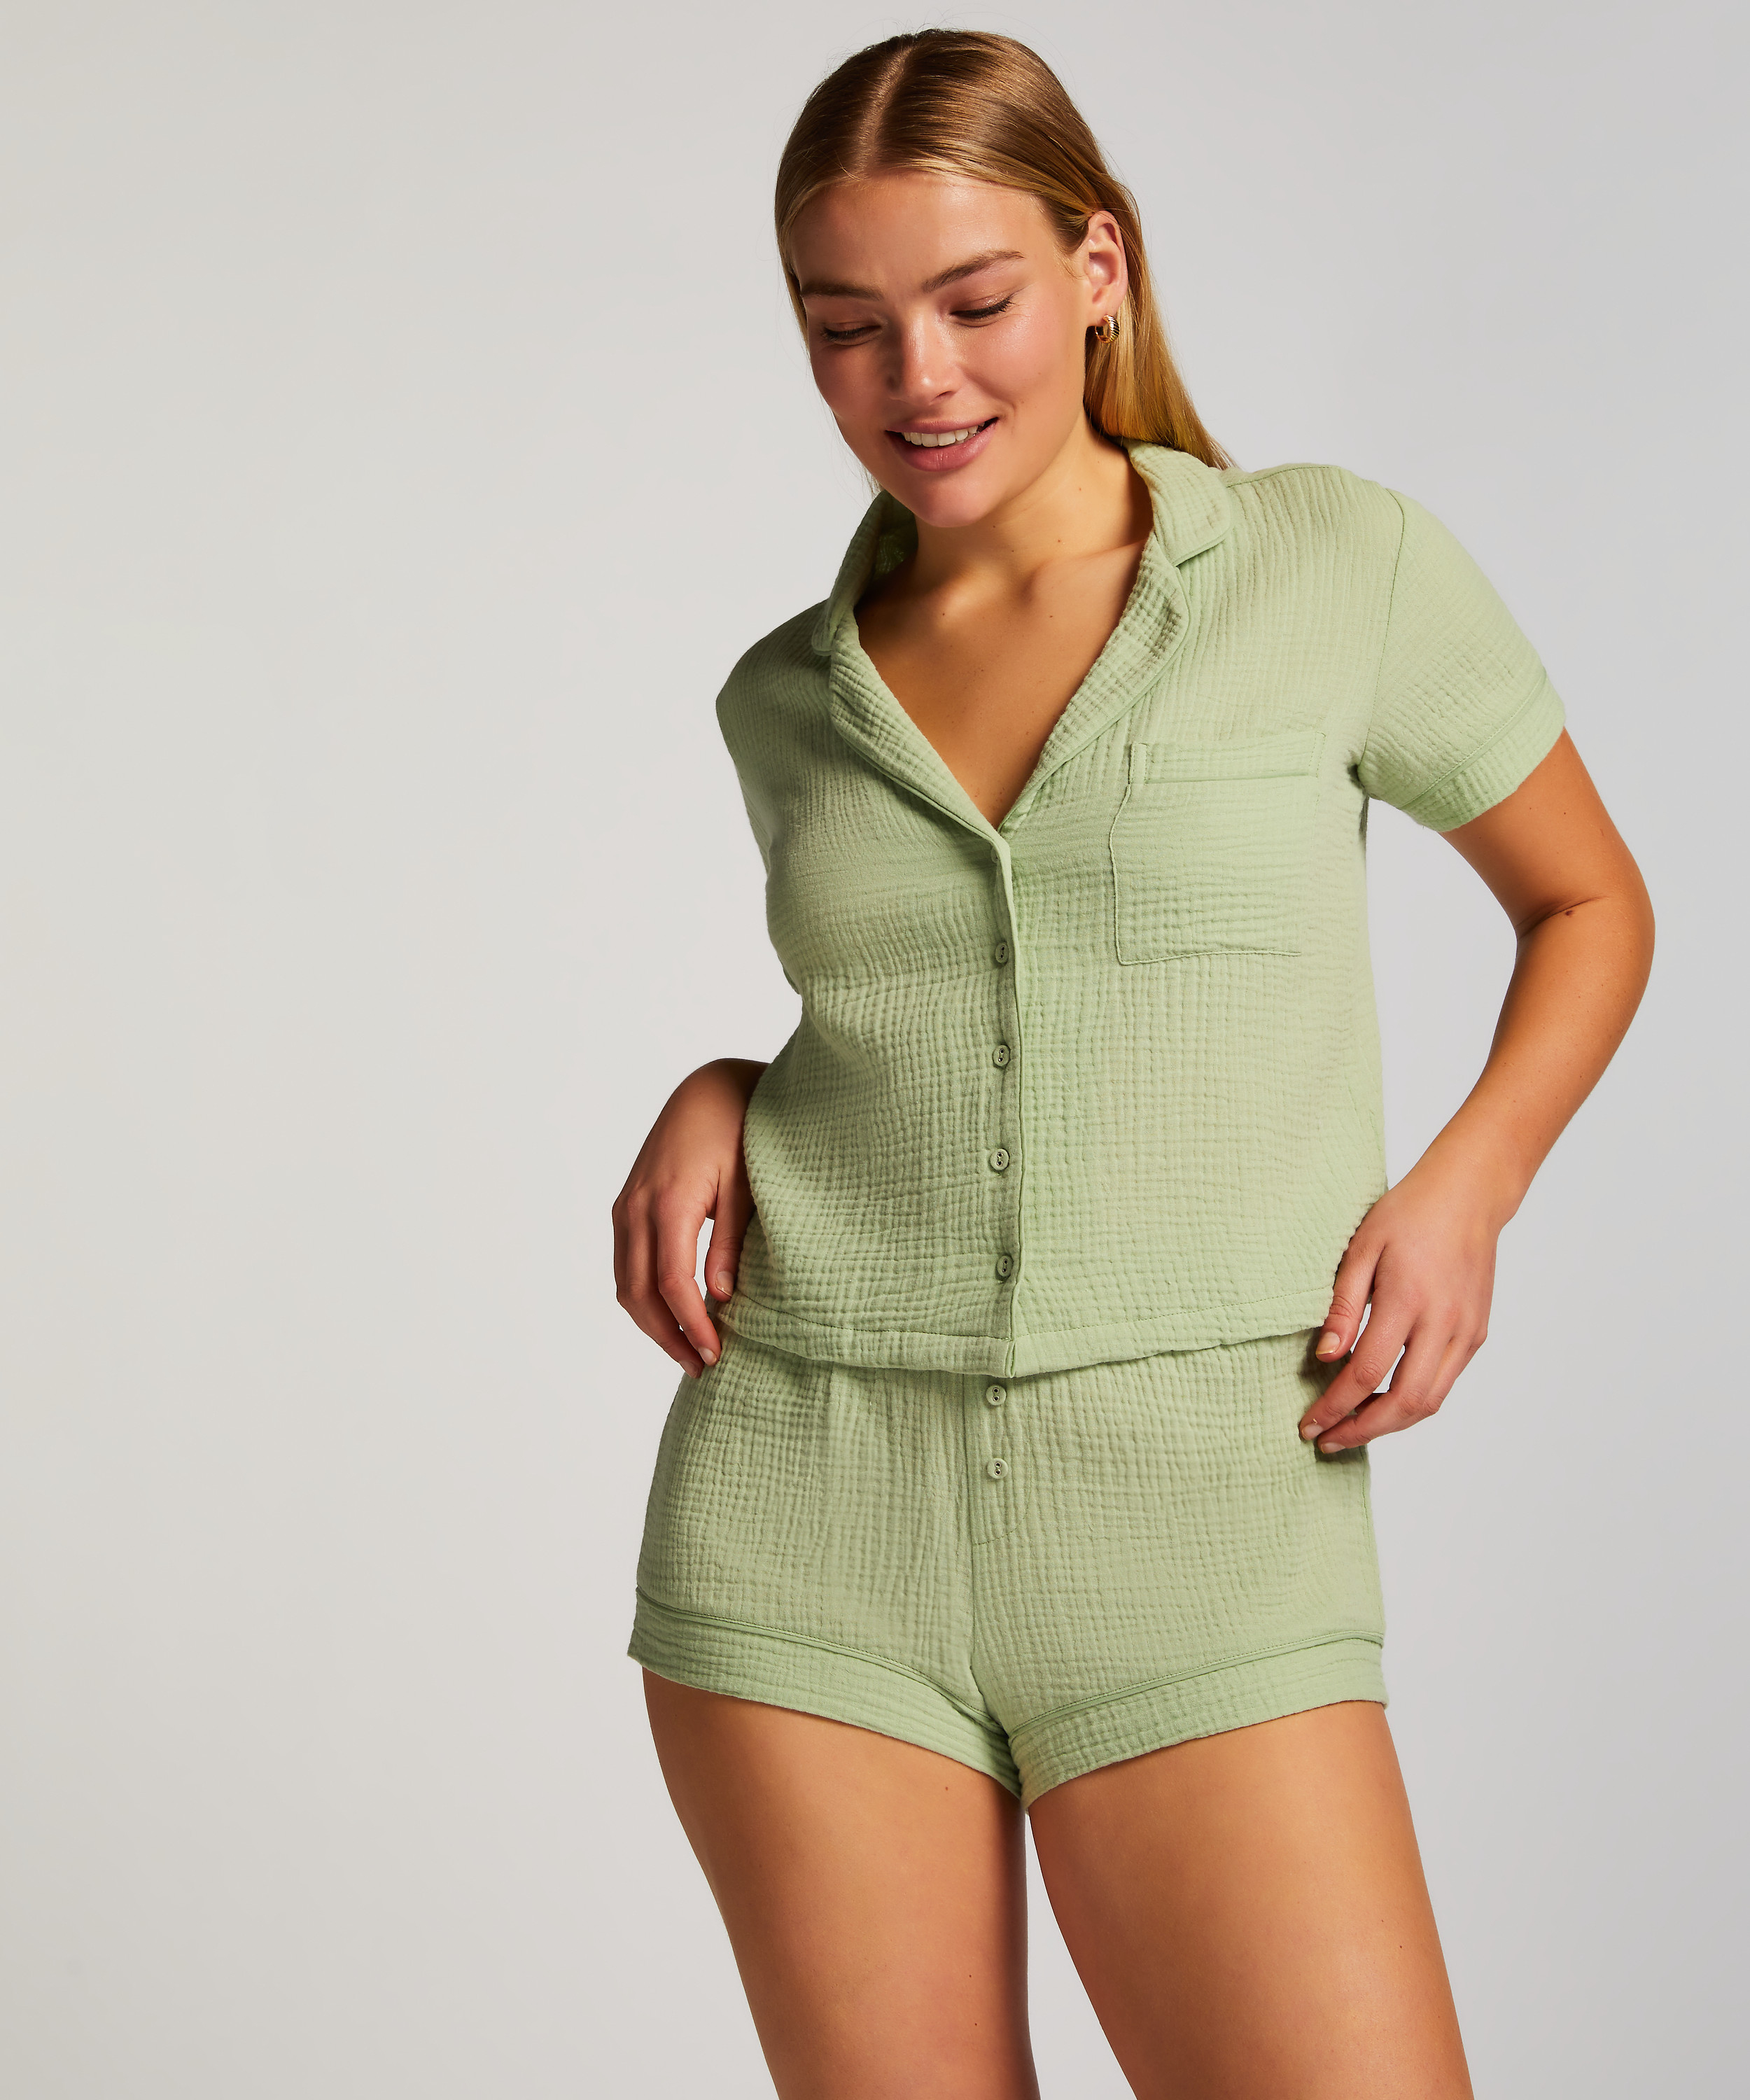 Springbreakers Pyjama Top, Green, main